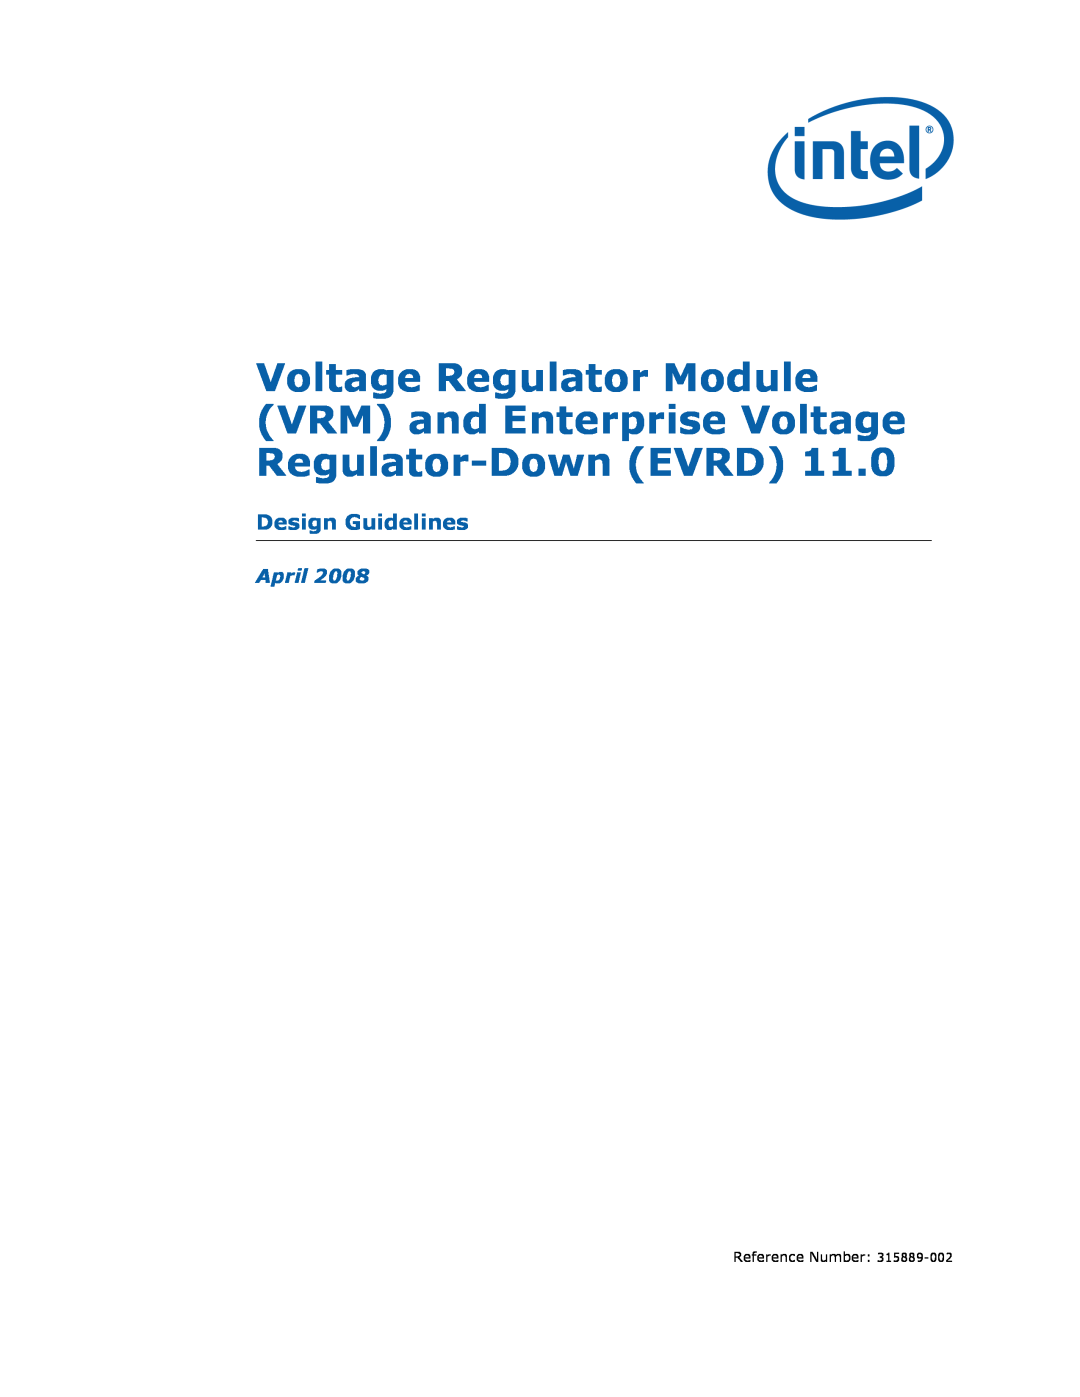 Intel 315889-002 manual Voltage Regulator Module, VRM and Enterprise Voltage Regulator-DownEVRD, Design Guidelines, April 